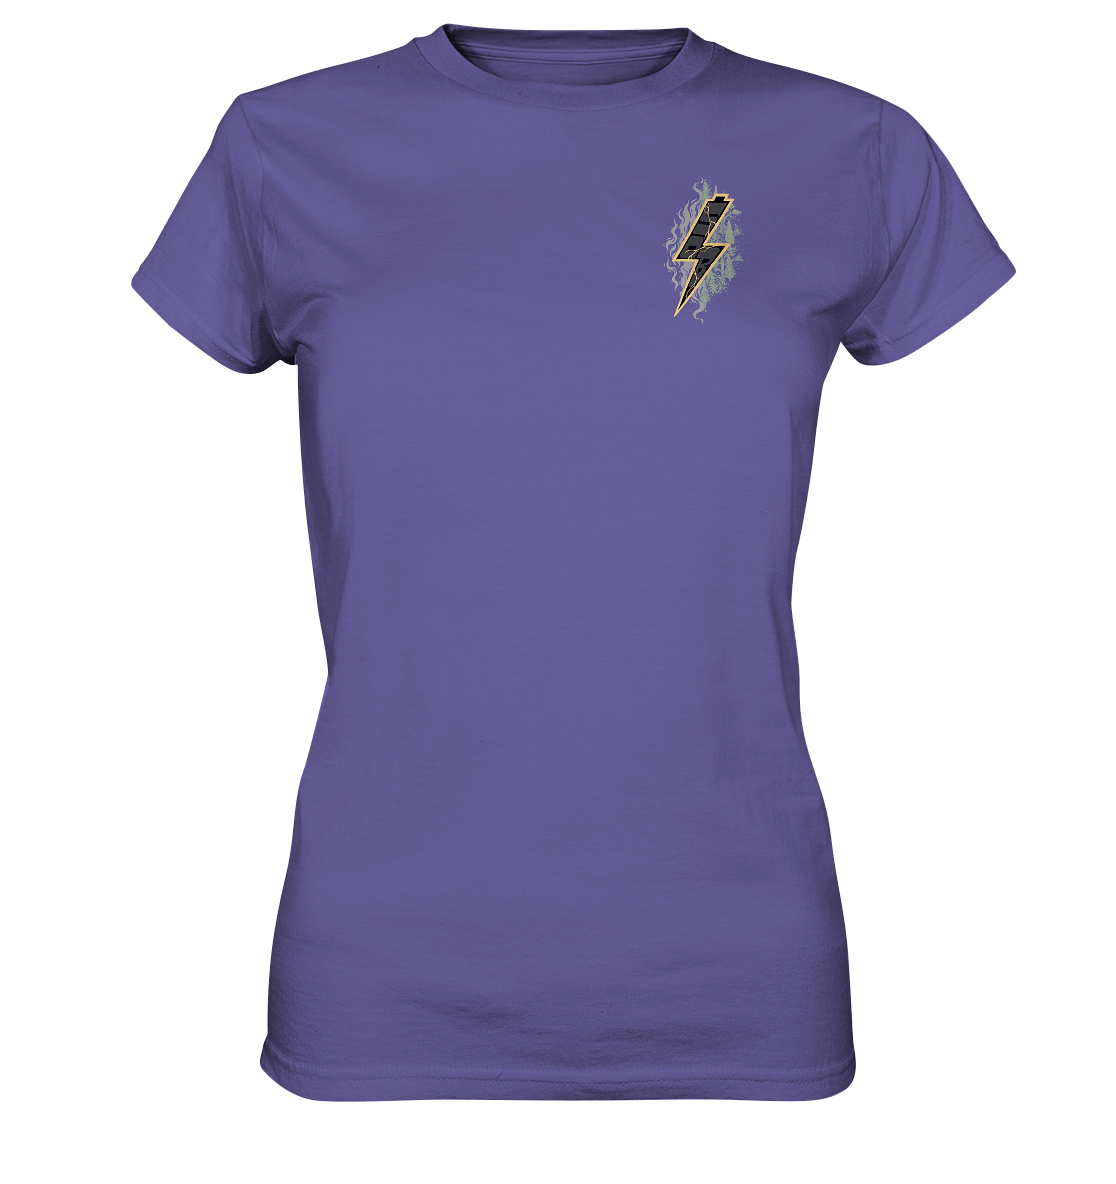 Sons of Battery® - E-MTB Brand & Community Lady-Shirts Millenial Lilac / XS SoB - Shred or Alive - Ladies Premium Shirt E-Bike-Community